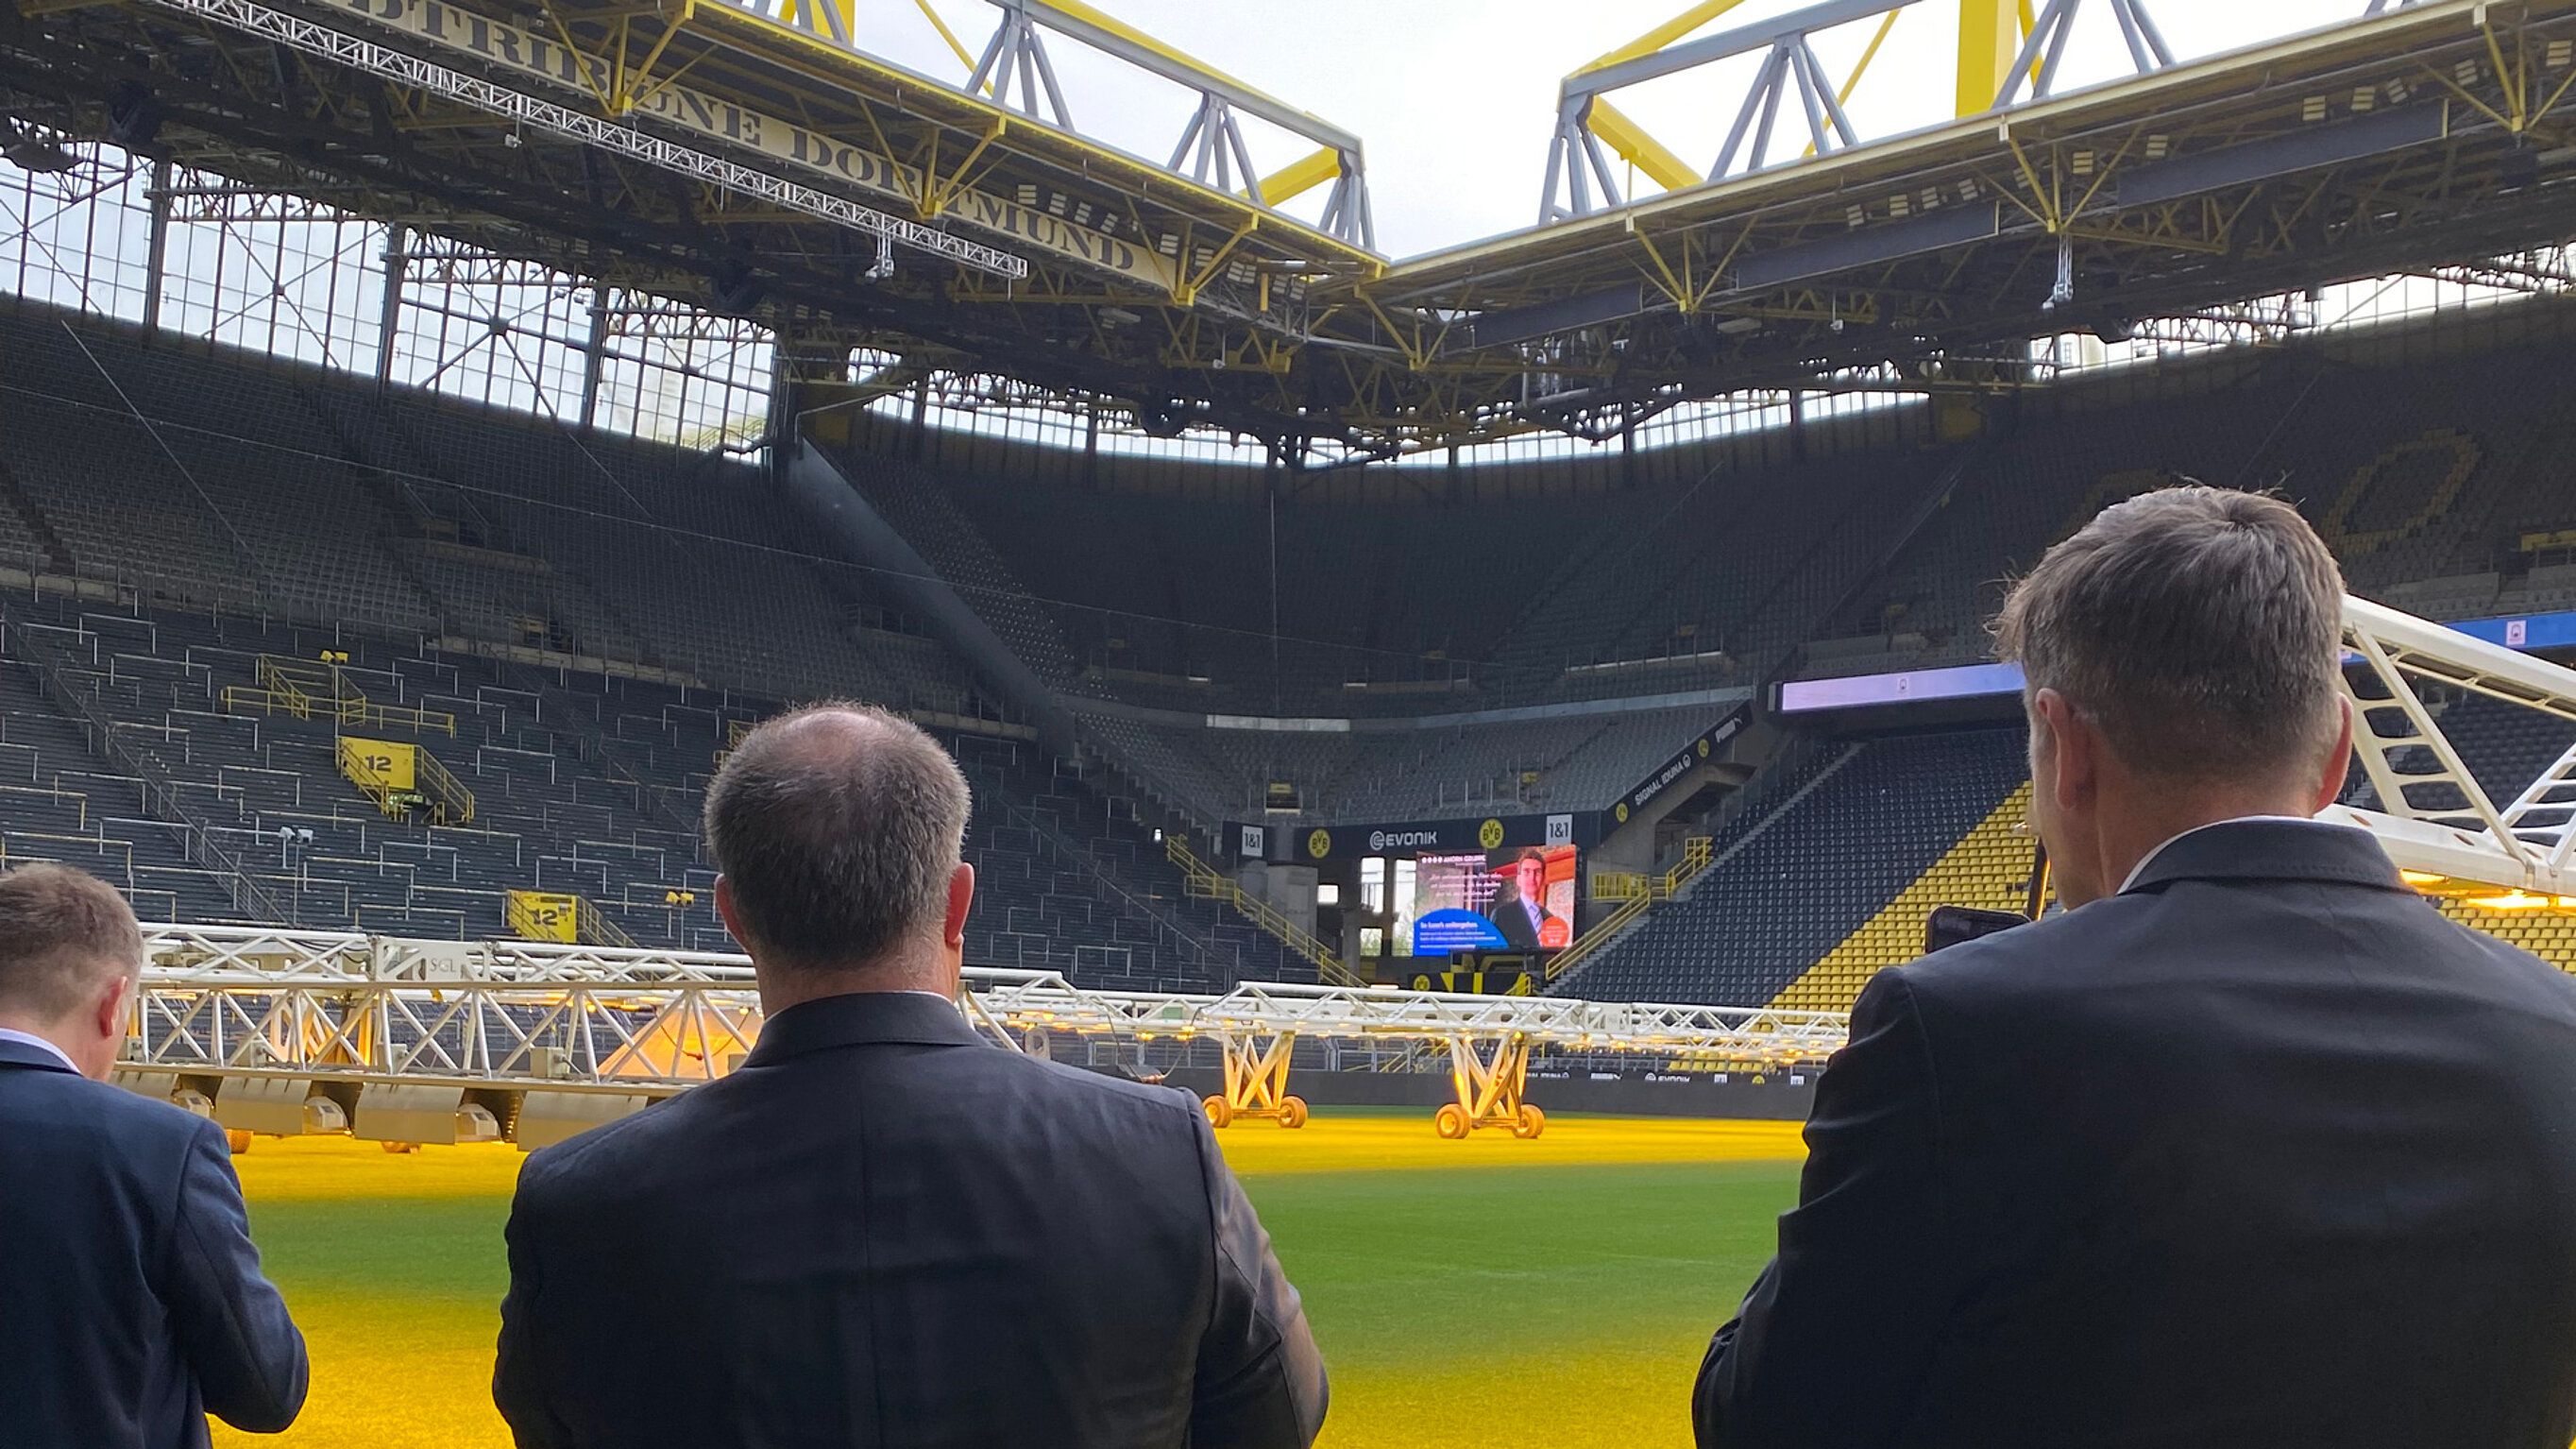 Hinter den Rücken von zwei Männern ist der Innenraum eines Fußballstadions zu sehen.